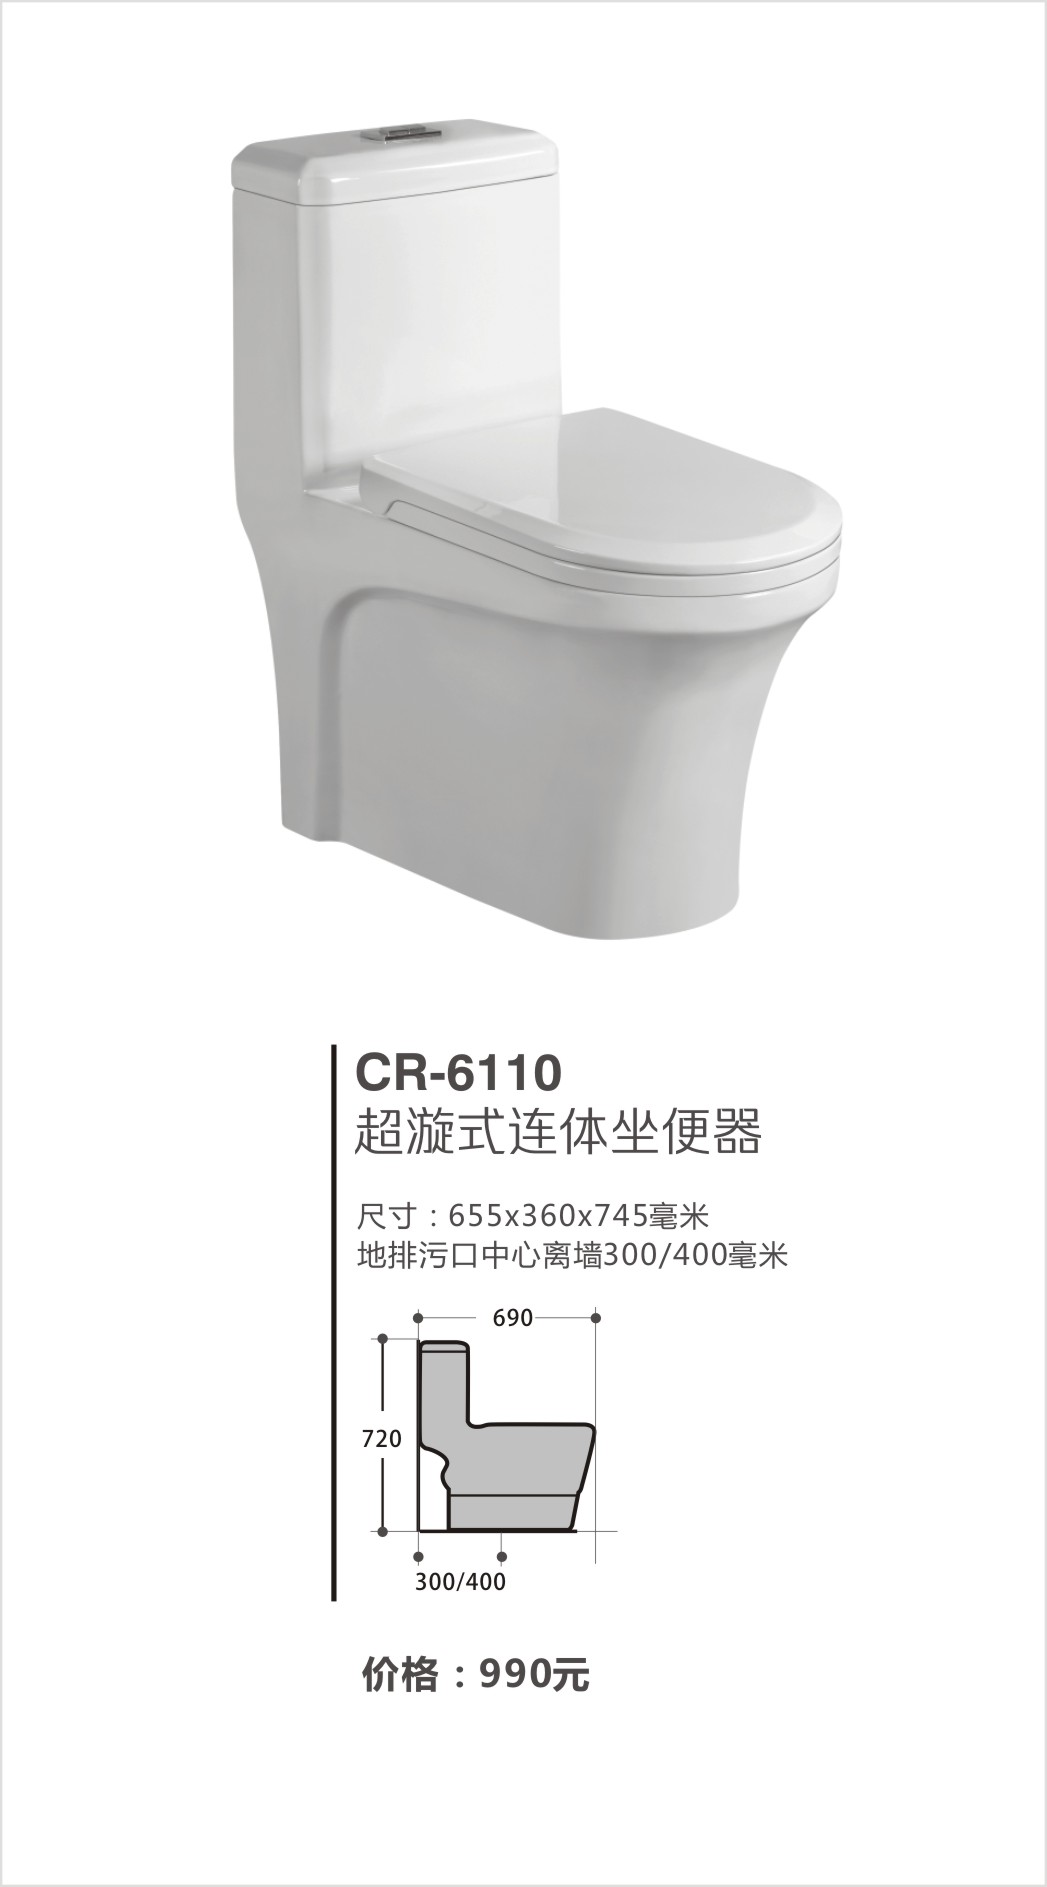 超人（chaoren）卫浴系列坐便器CR-6110